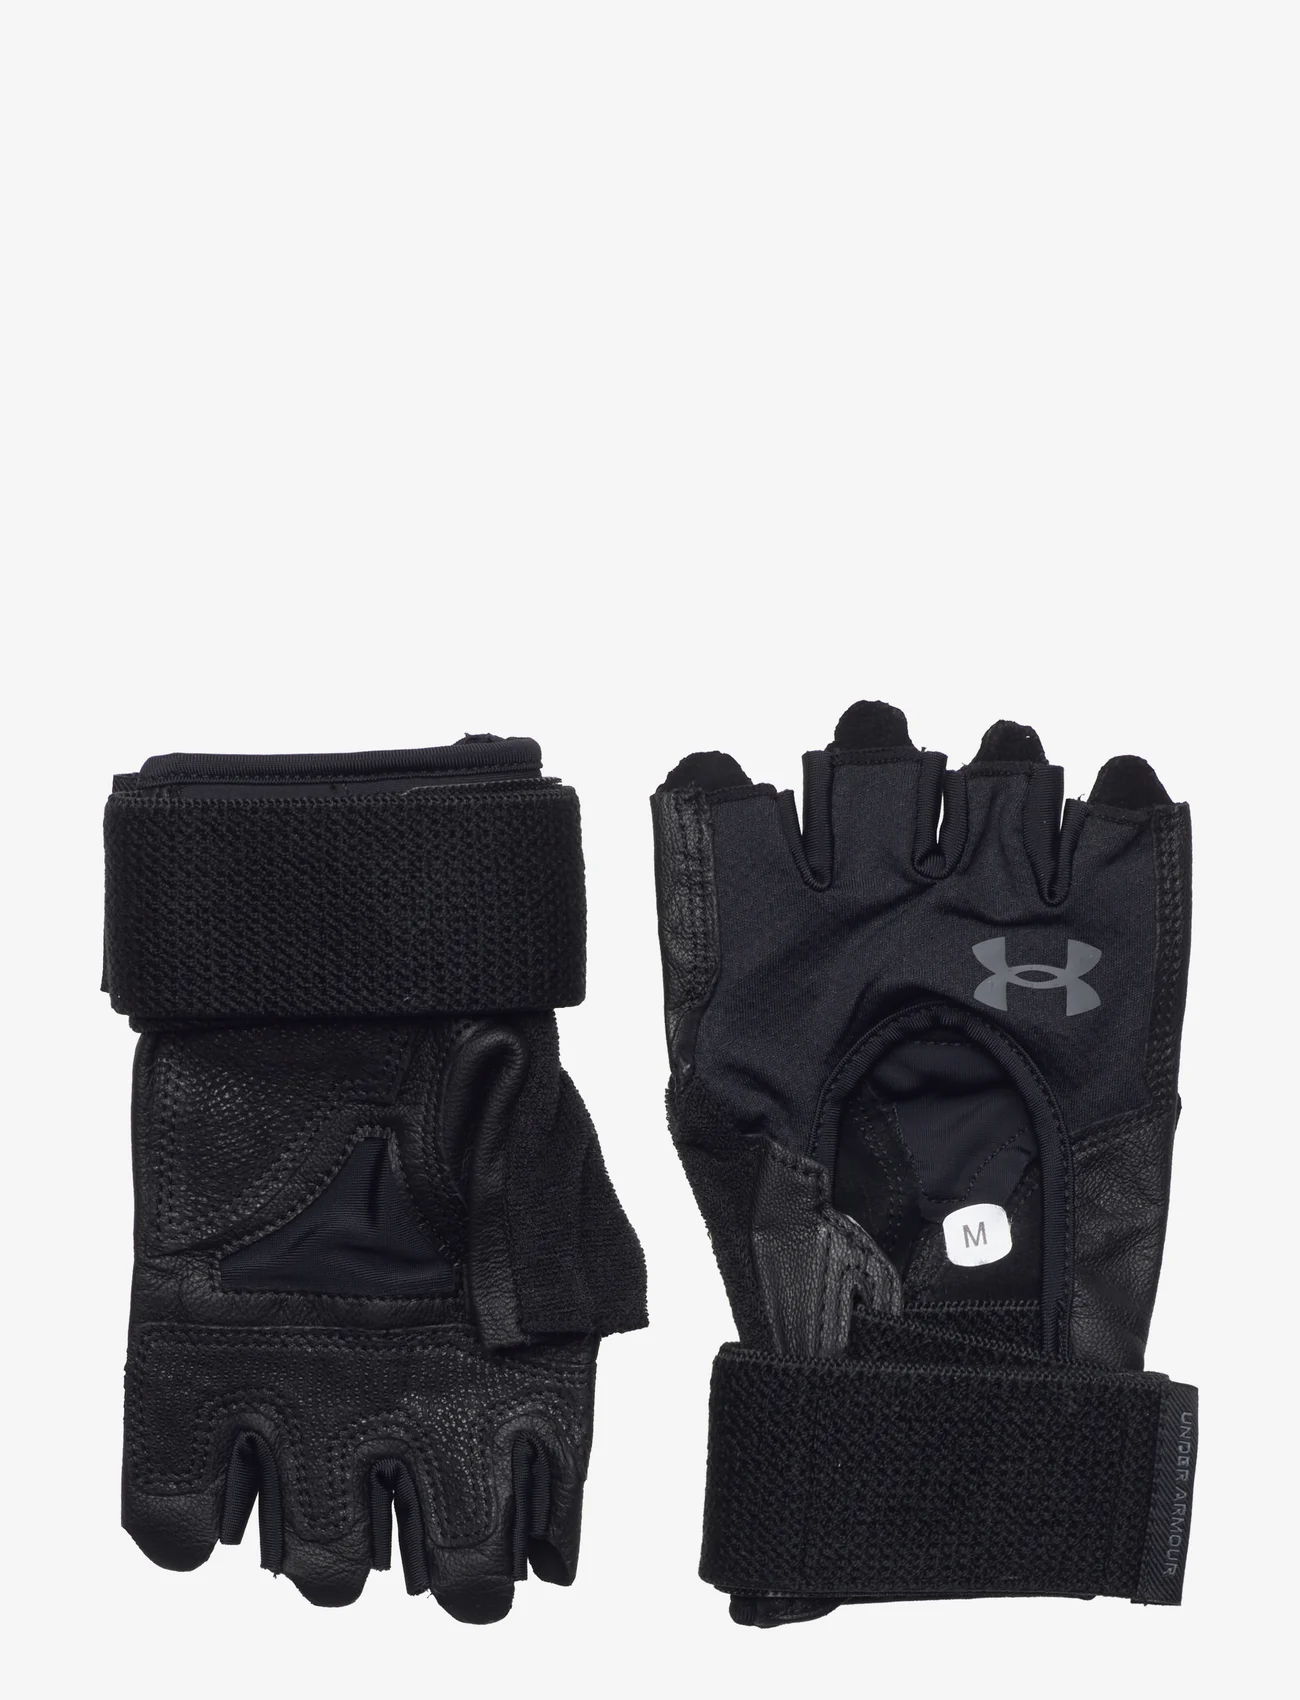 Under Armour - M's Weightlifting Gloves - men - black - 0